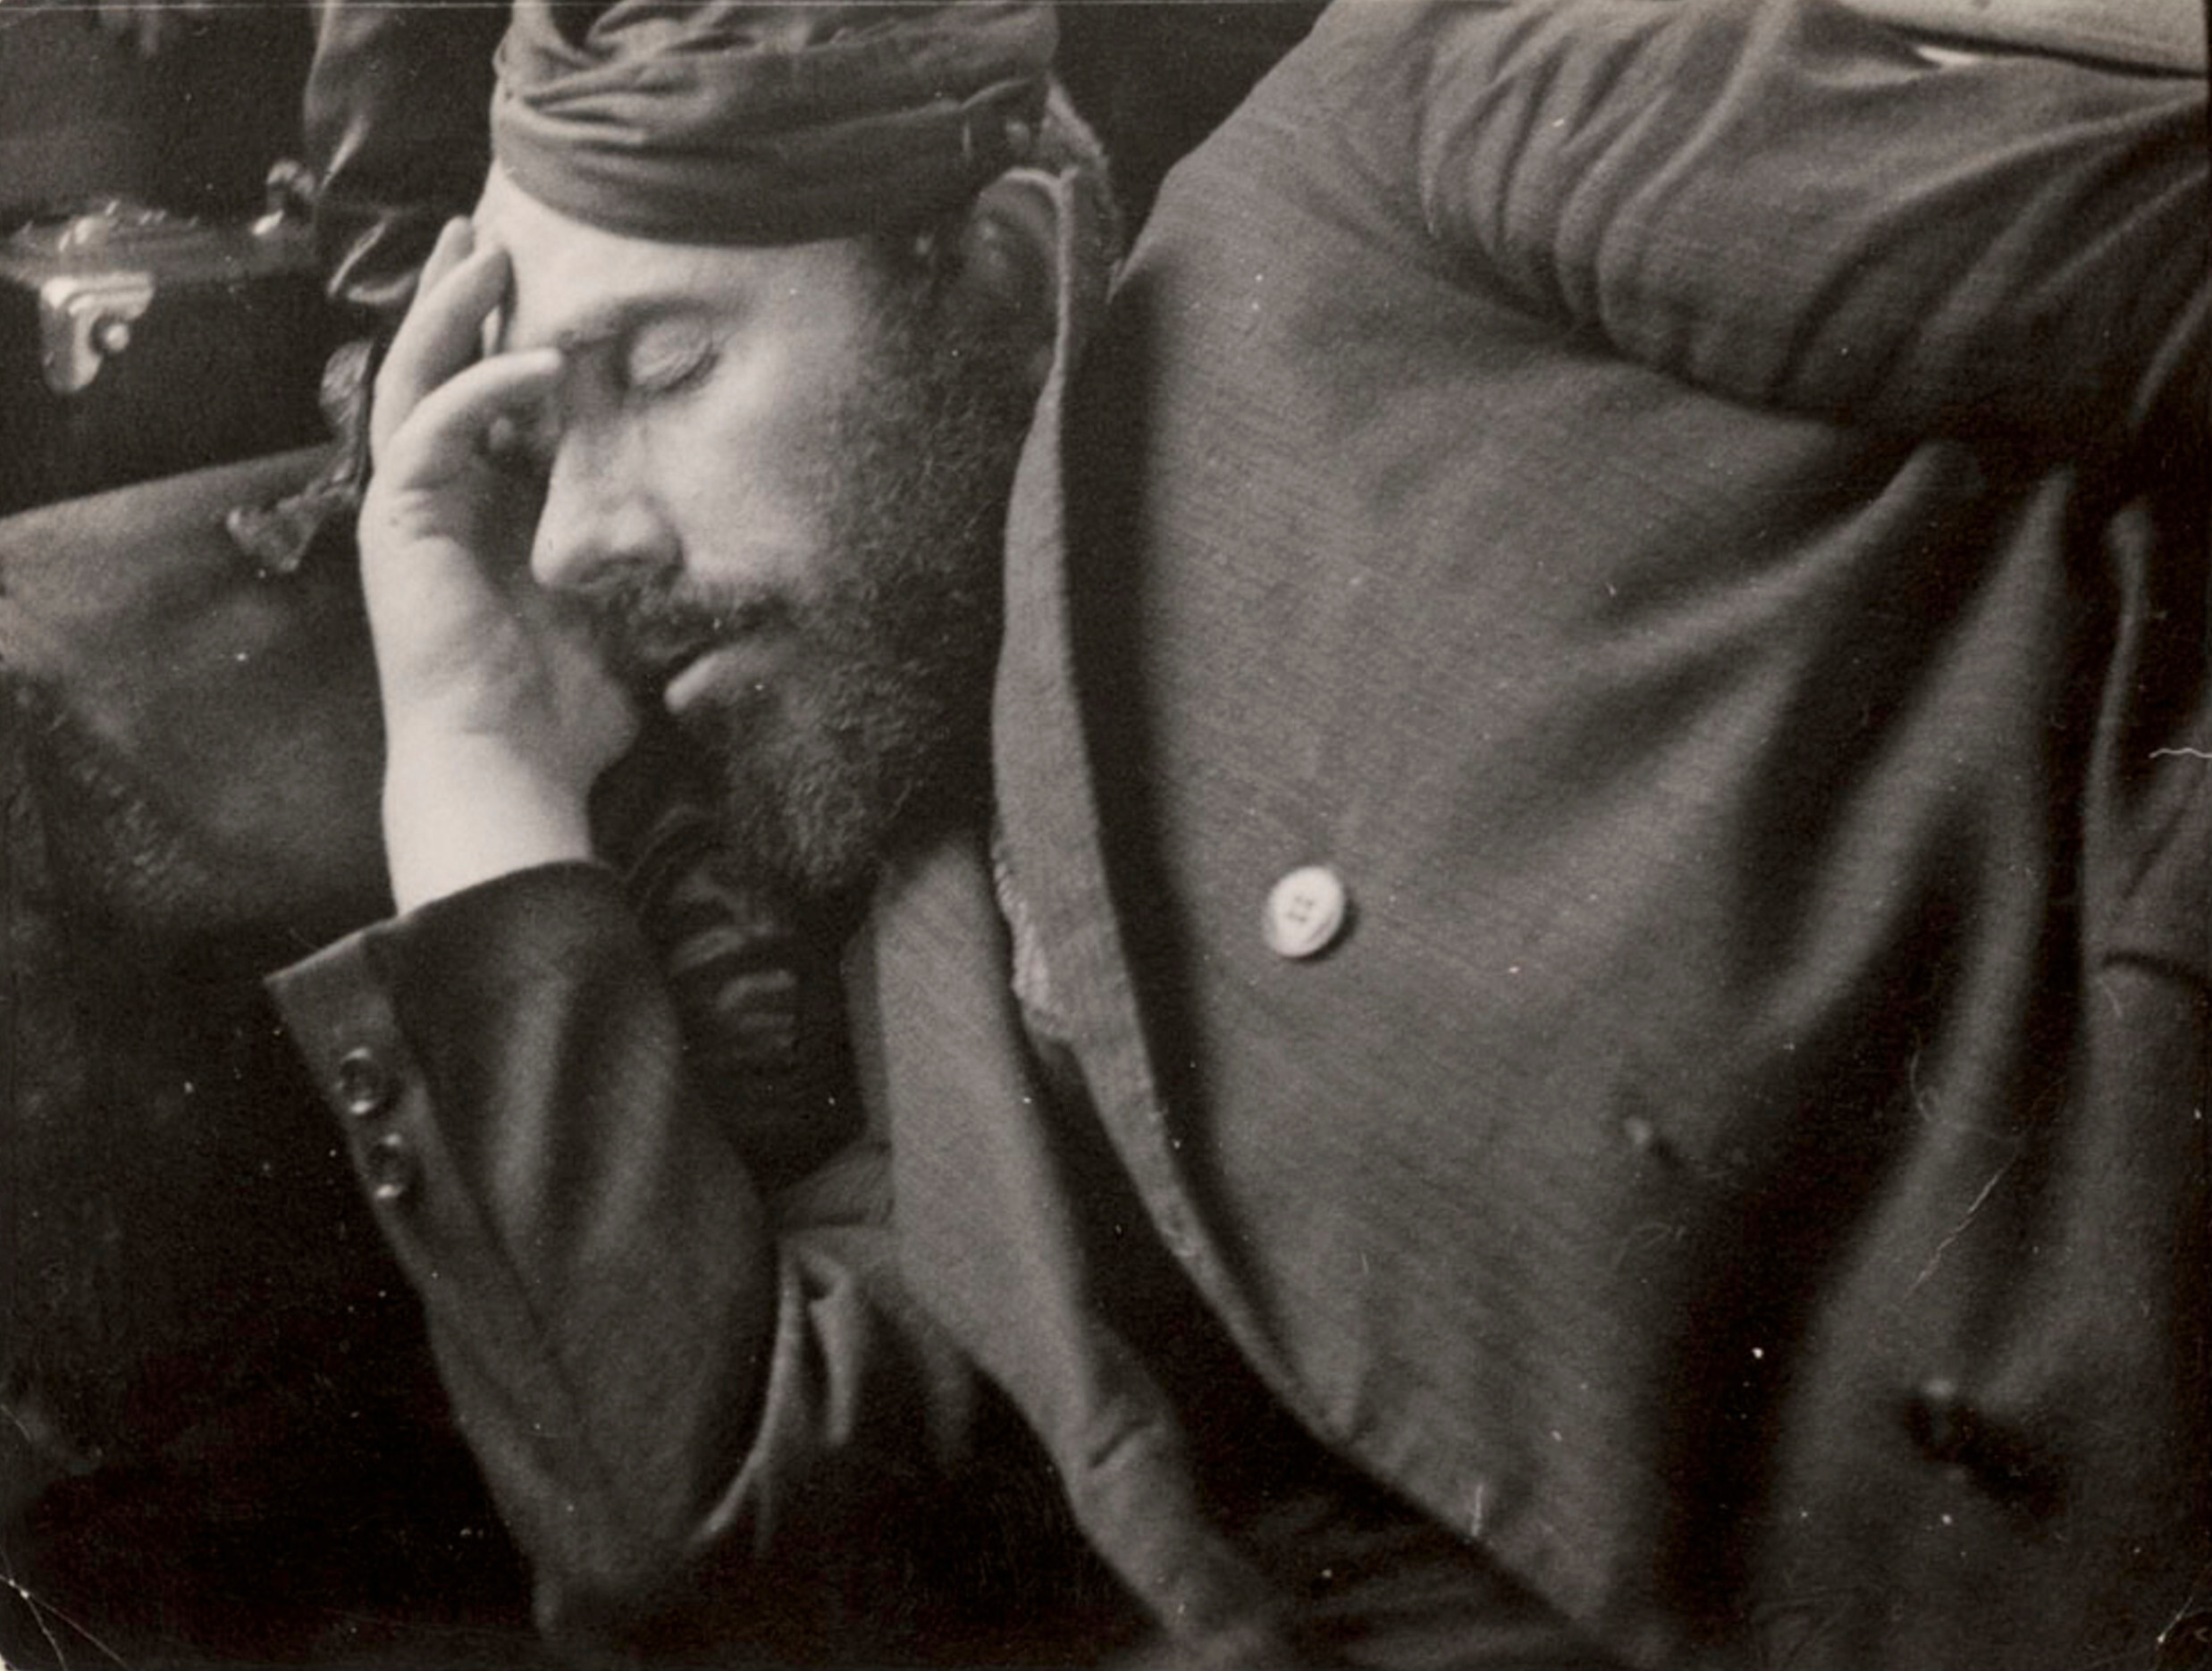 Продавец спит на скамейке в вагоне, чтобы сэкономить на жилье, Восточная Европа, ок. 1935-38 гг. Фотограф Роман Вишняк